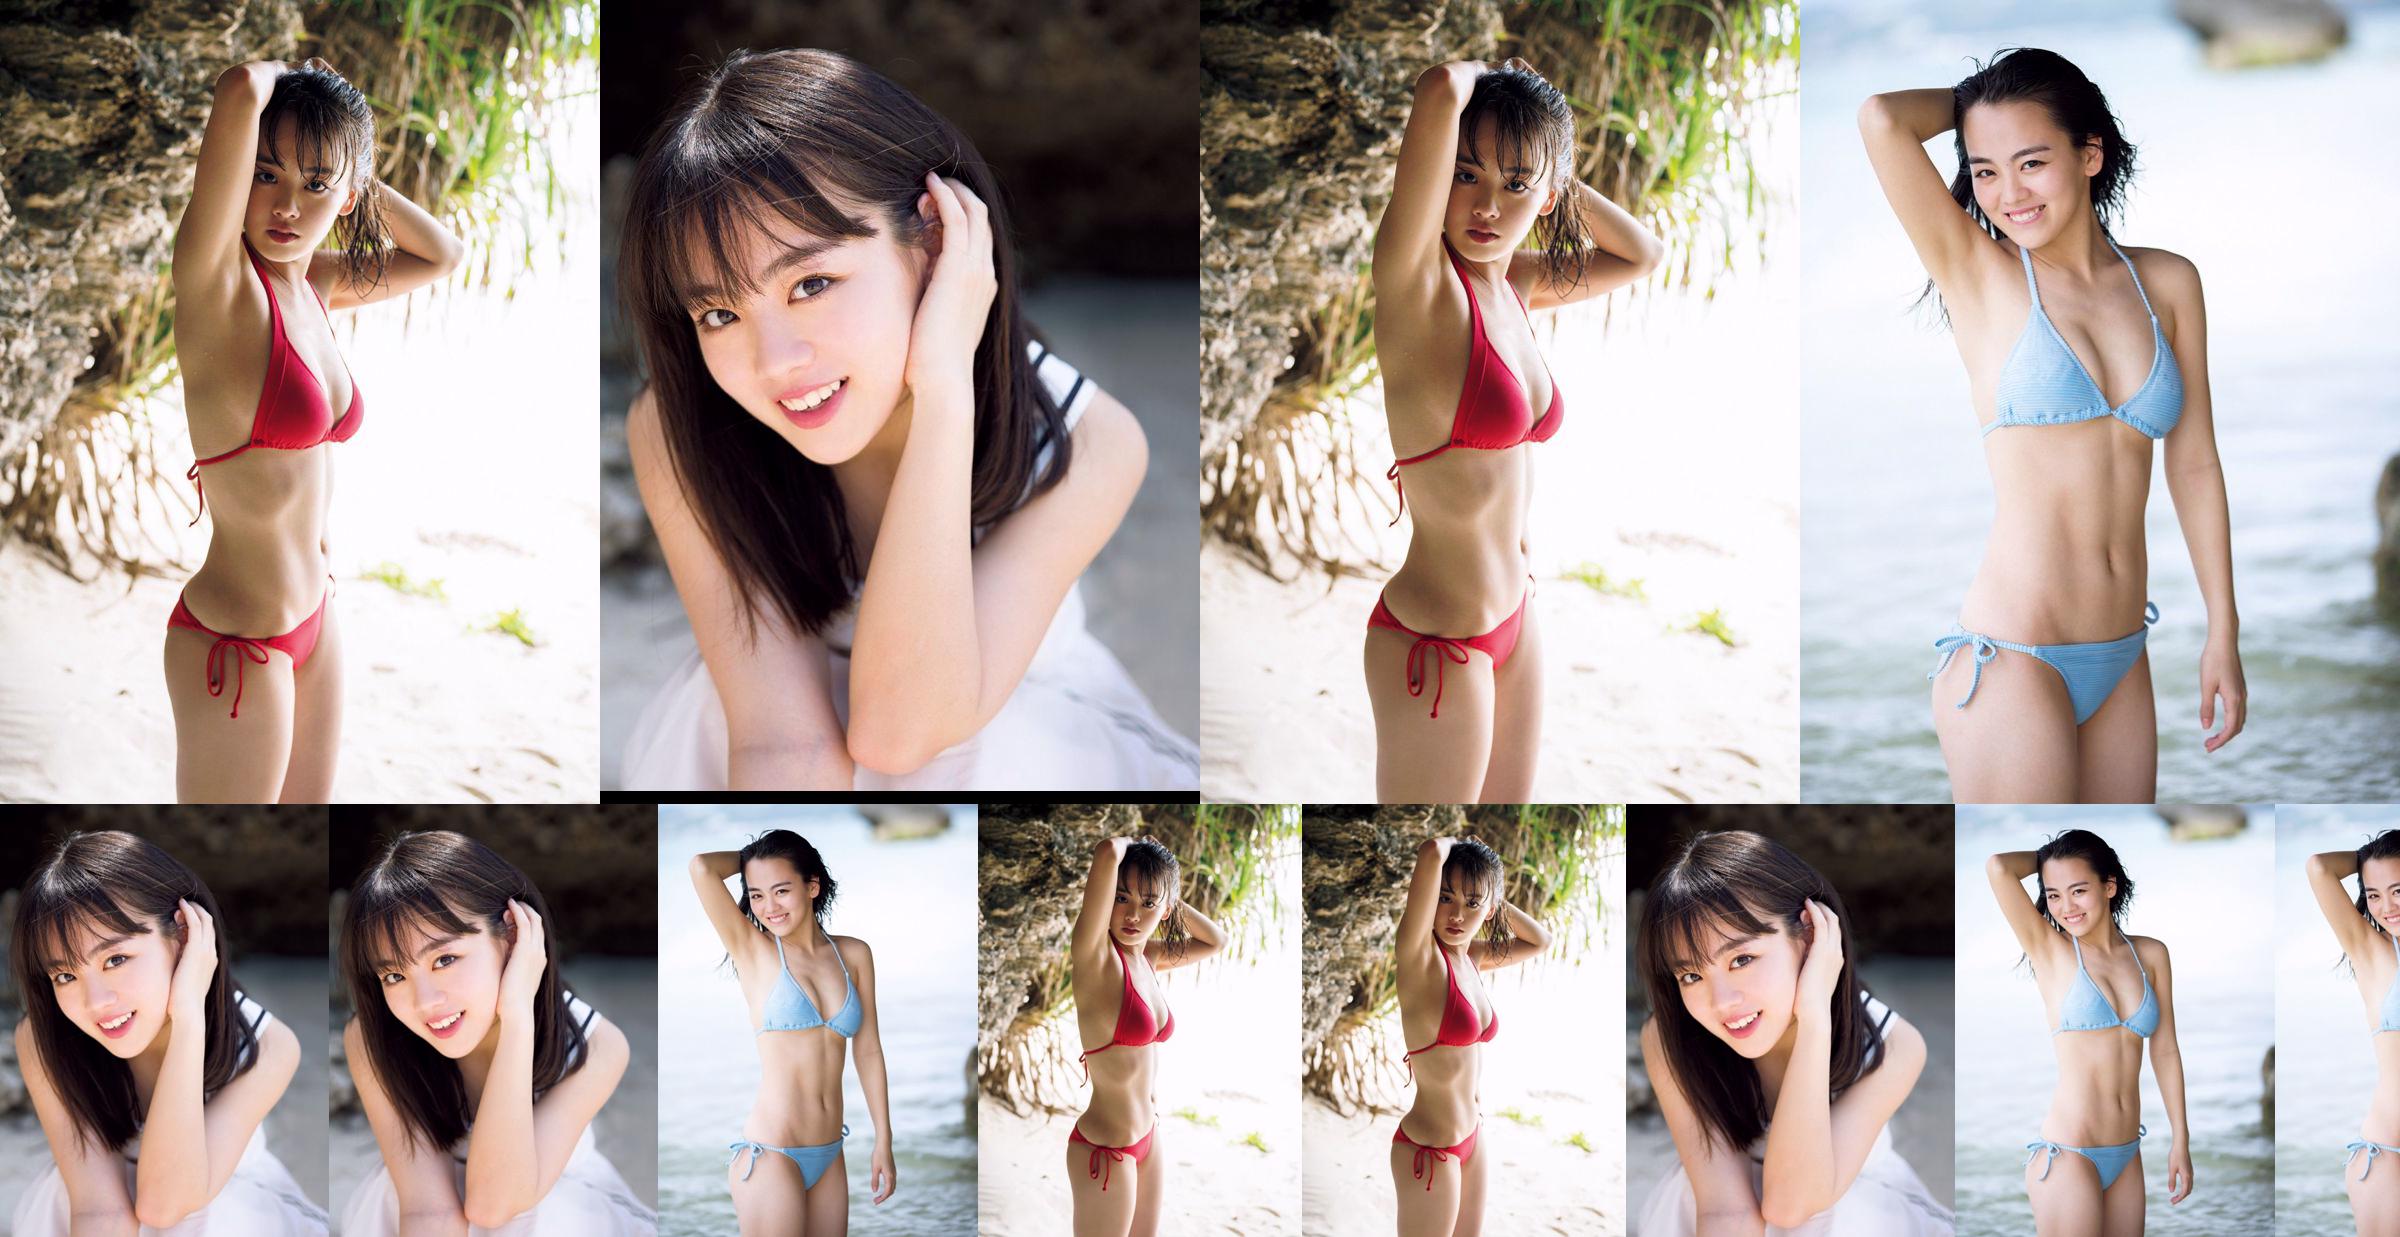 [THỨ SÁU] Rikka Ihara << Cựu đội trưởng câu lạc bộ khiêu vũ trường trung học Tomioka ra mắt trong bộ bikini >> Ảnh No.8166c1 Trang 1